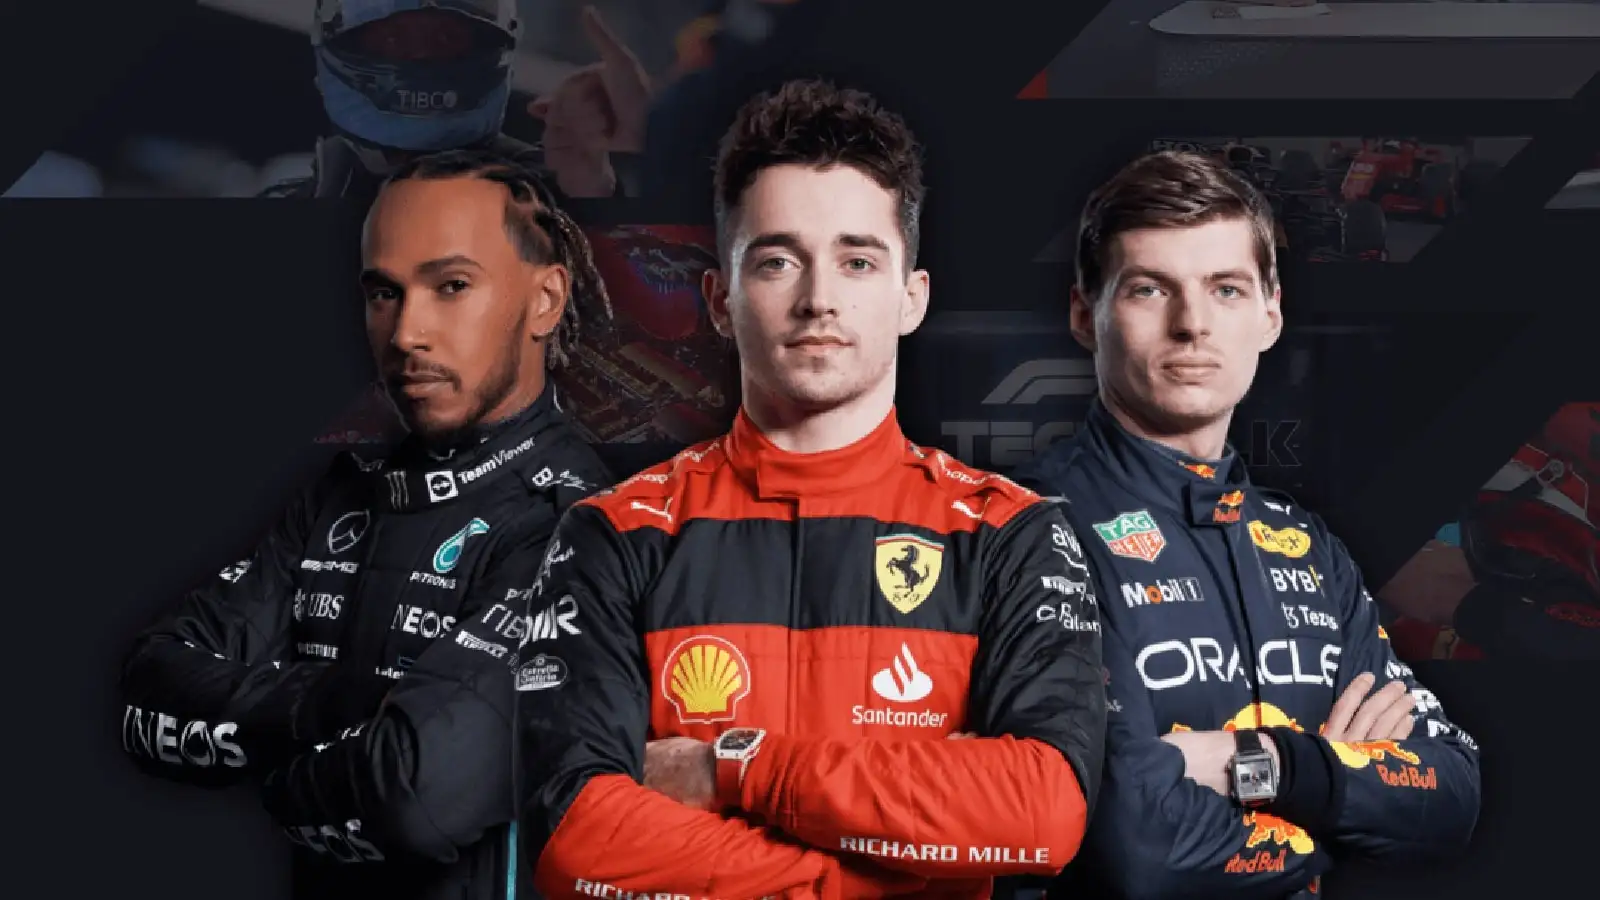 F1 TV Pro promotional image